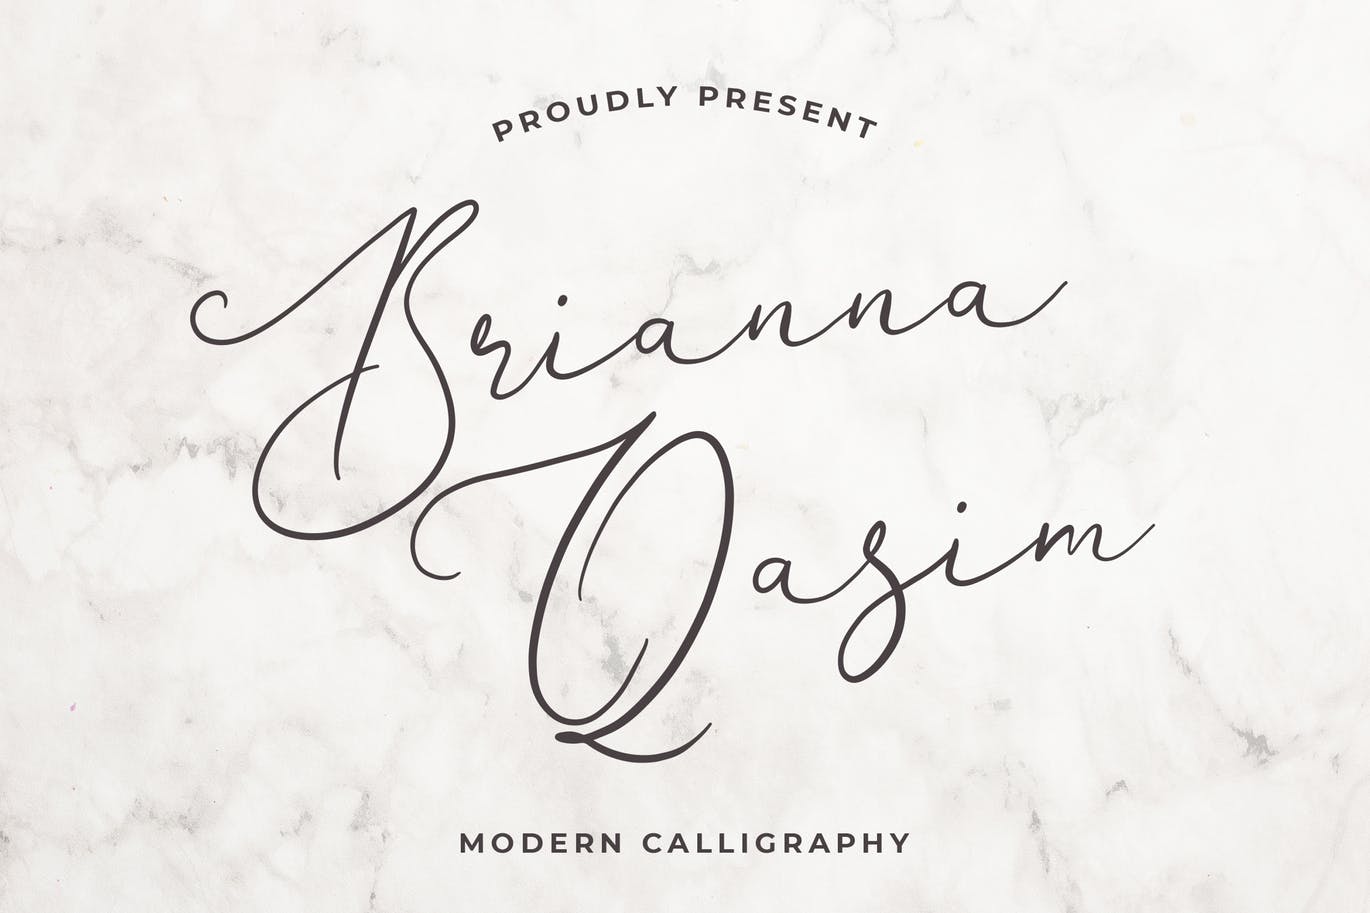 独特手写连笔书法英文字体蚂蚁素材精选 Brianna Qasim Beautiful Calligraphy Font插图